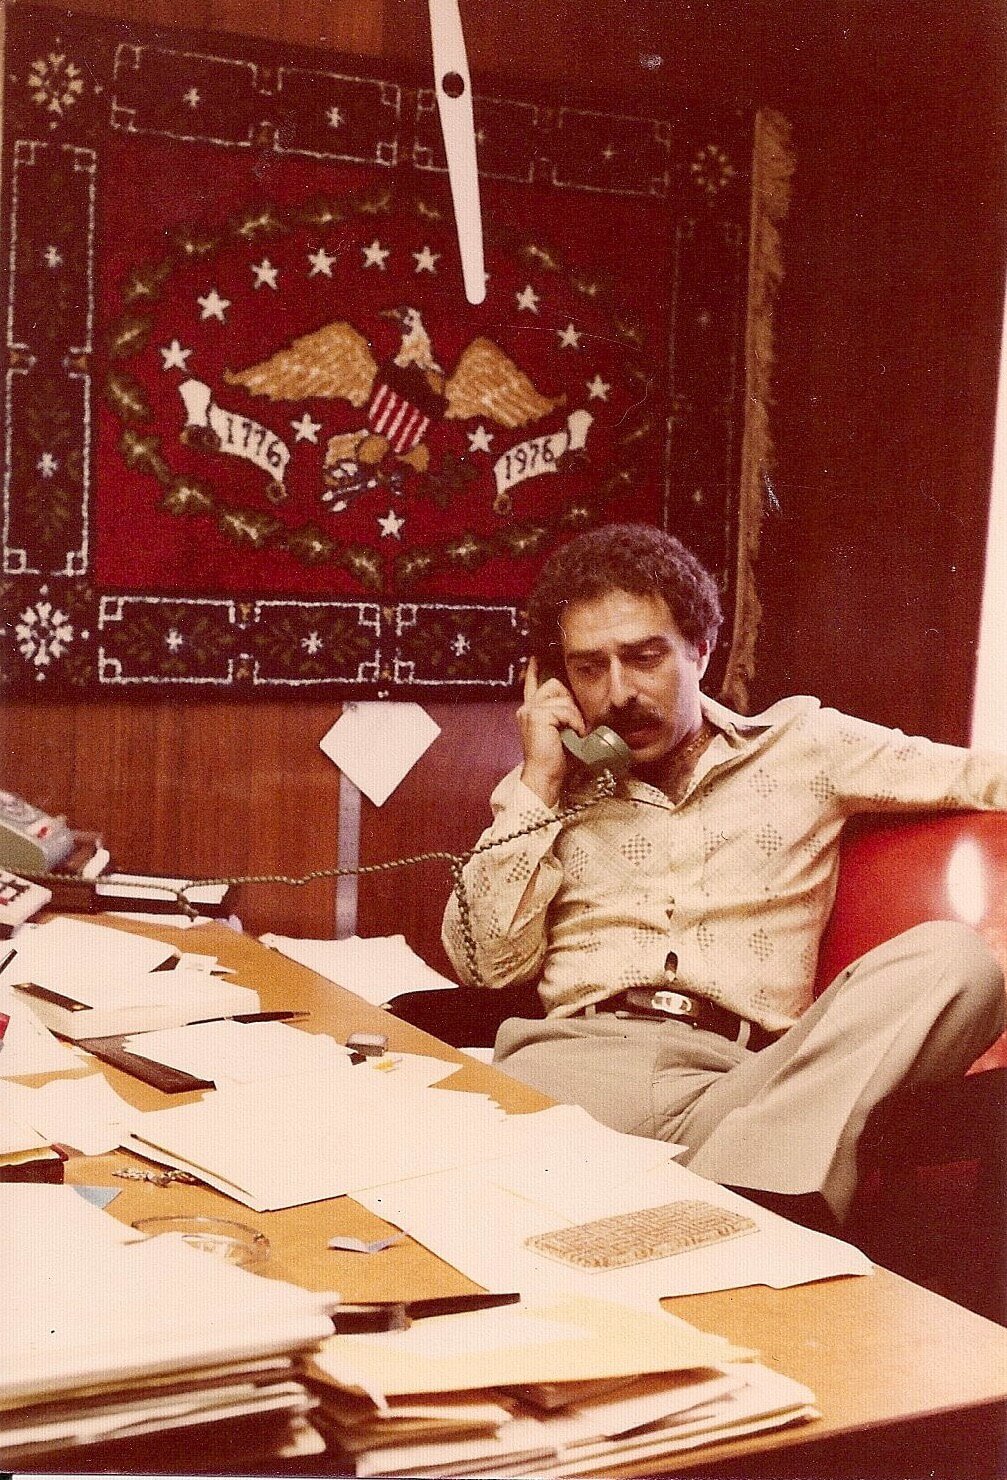 Warren Harris, Swatchtek and Flortek Founder, working at the office in 1978.